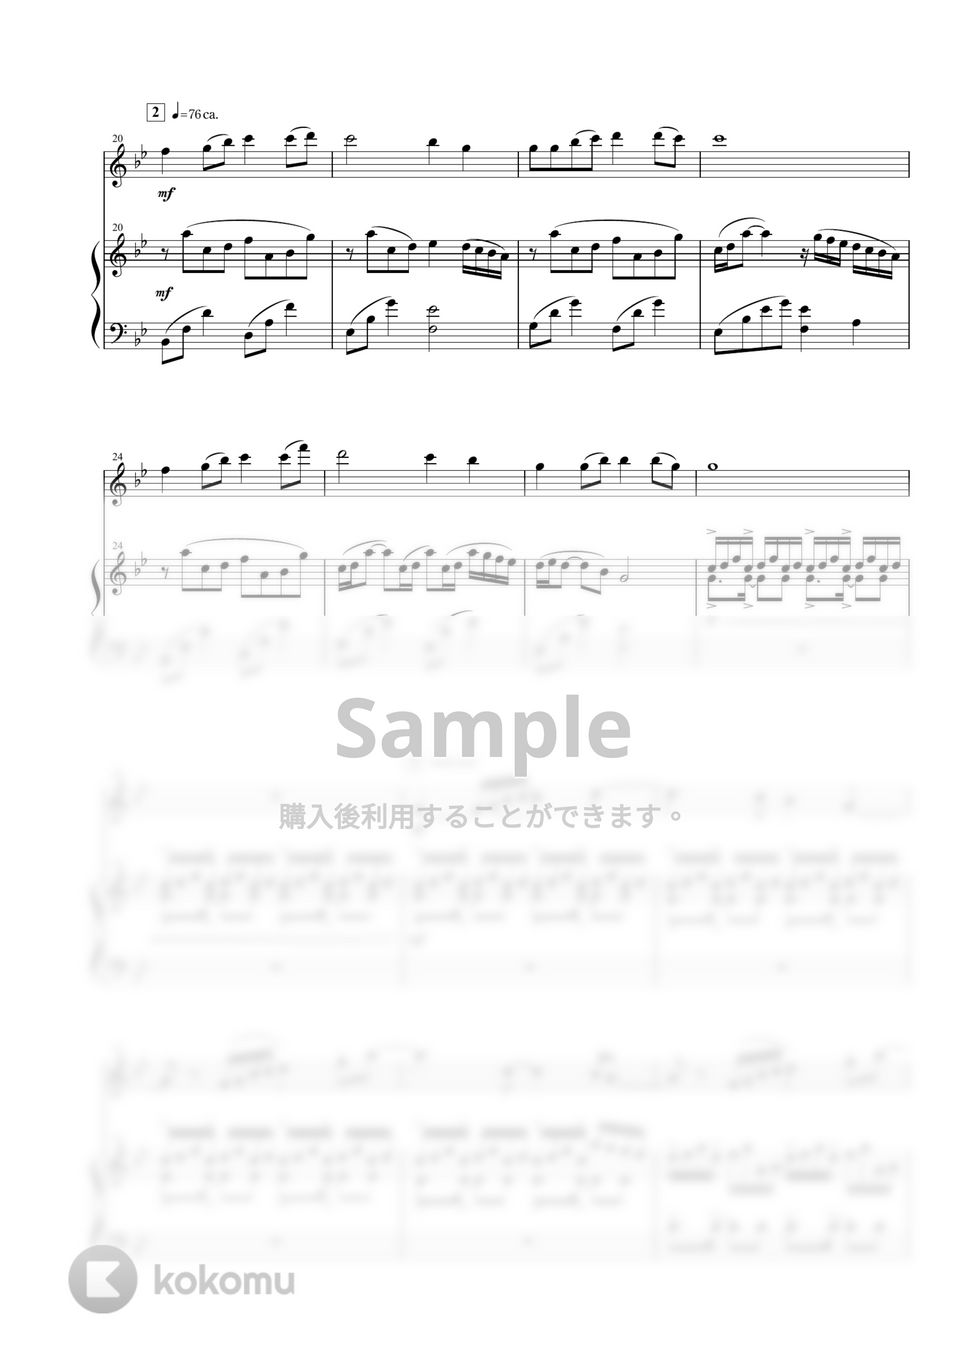 竹田の子守唄 (ヴァイオリン+ピアノ / スコア+パート譜) by 相澤洋正